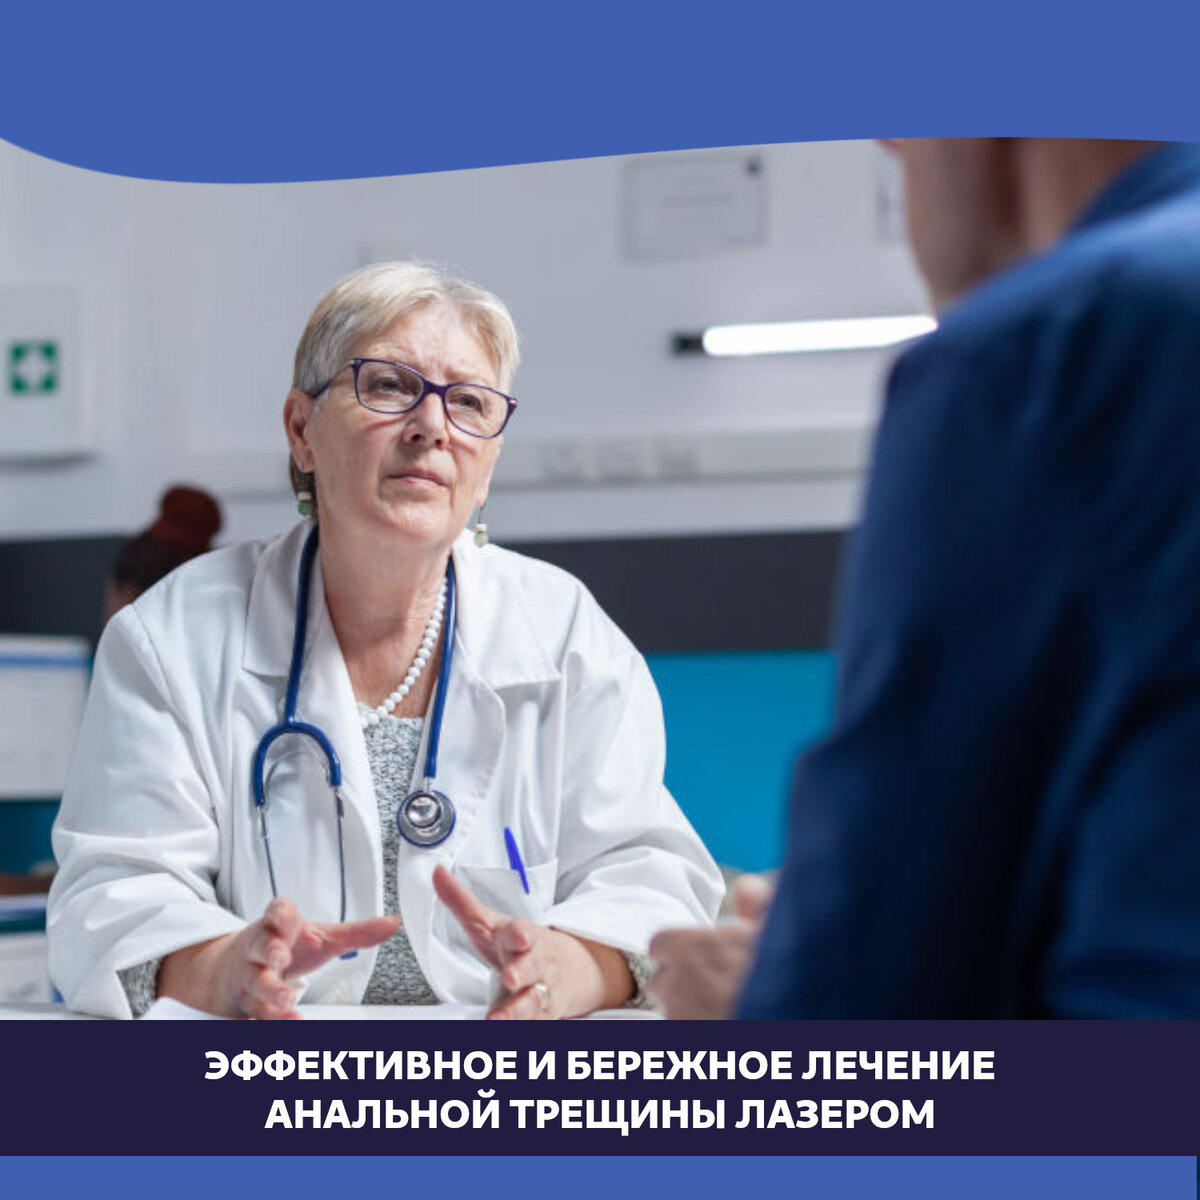 Анальная трещина - симптомы и лечение трещины заднего прохода, цена в Приморском районе СПБ